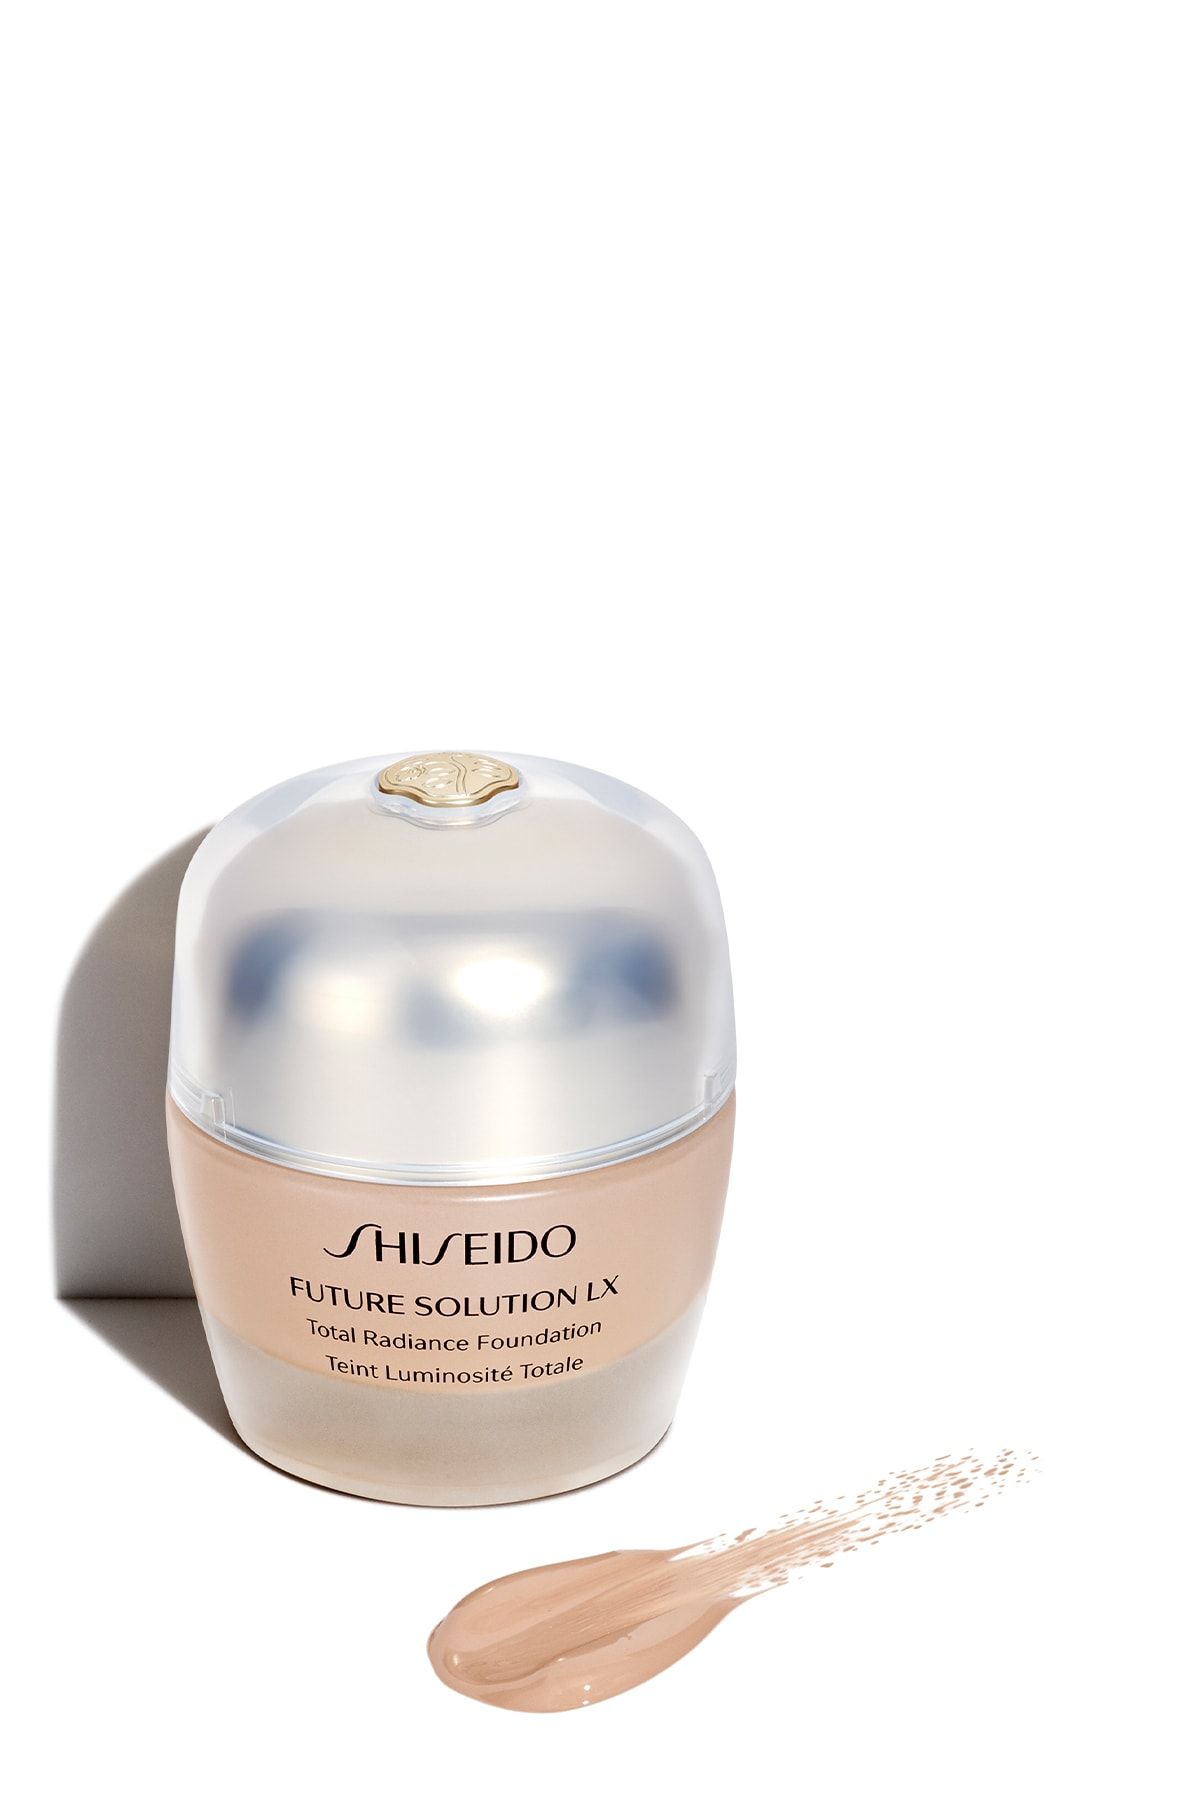 Shiseido Future Solutıon Lx Total Radıance Foundatıon R3 Spf20